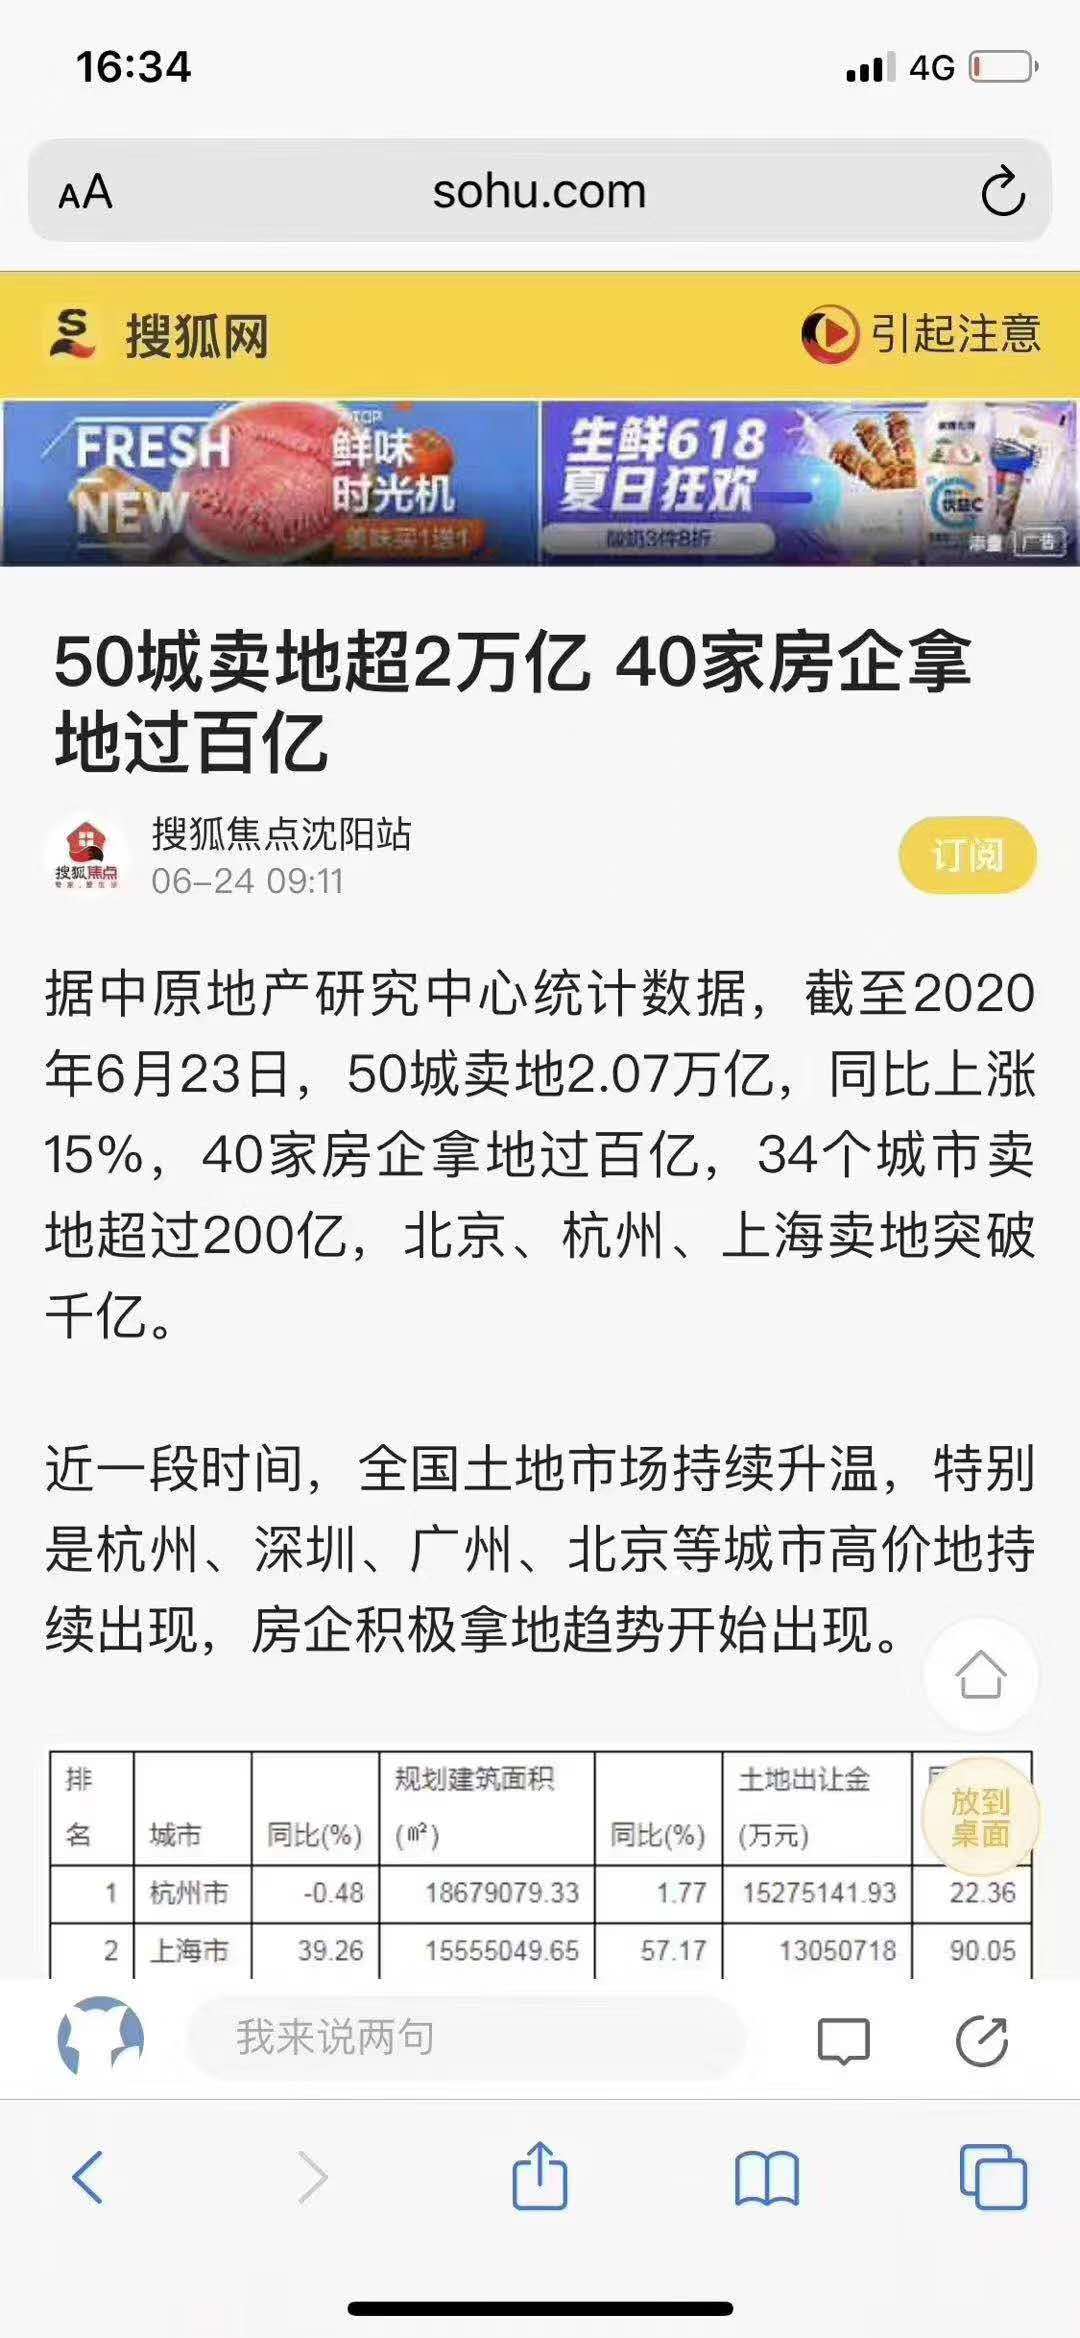 土地市场最新情况洞察涿州房产价值走势和涿州房价上涨空间机遇